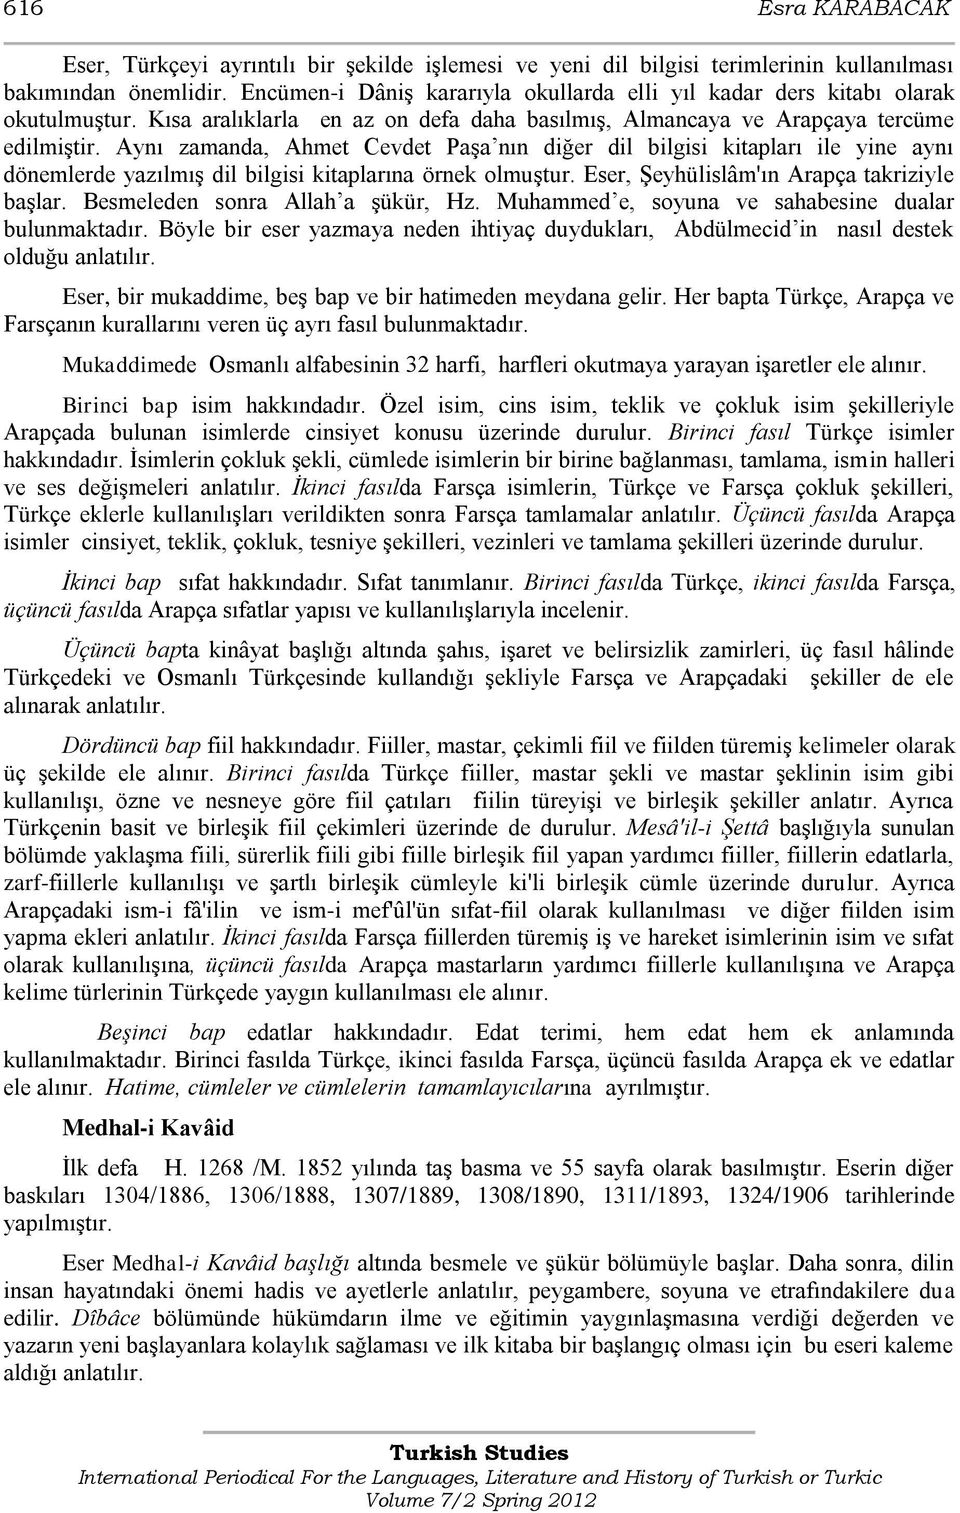 Aynı zamanda, Ahmet Cevdet PaĢa nın diğer dil bilgisi kitapları ile yine aynı dönemlerde yazılmıģ dil bilgisi kitaplarına örnek olmuģtur. Eser, ġeyhülislâm'ın Arapça takriziyle baģlar.